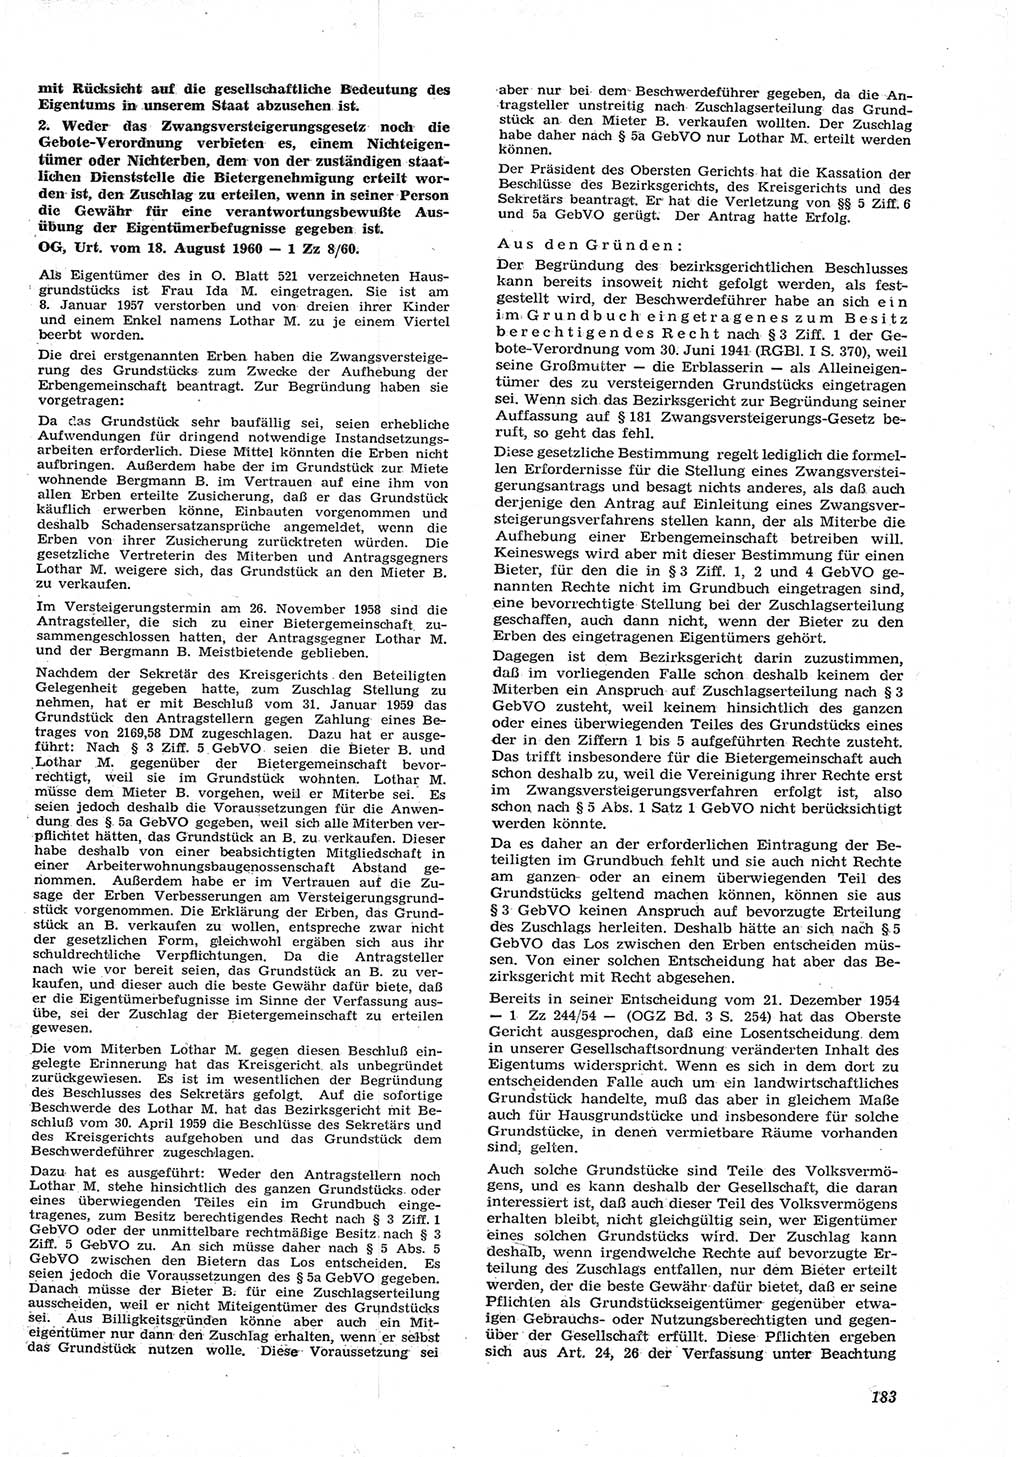 Neue Justiz (NJ), Zeitschrift für Recht und Rechtswissenschaft [Deutsche Demokratische Republik (DDR)], 15. Jahrgang 1961, Seite 183 (NJ DDR 1961, S. 183)